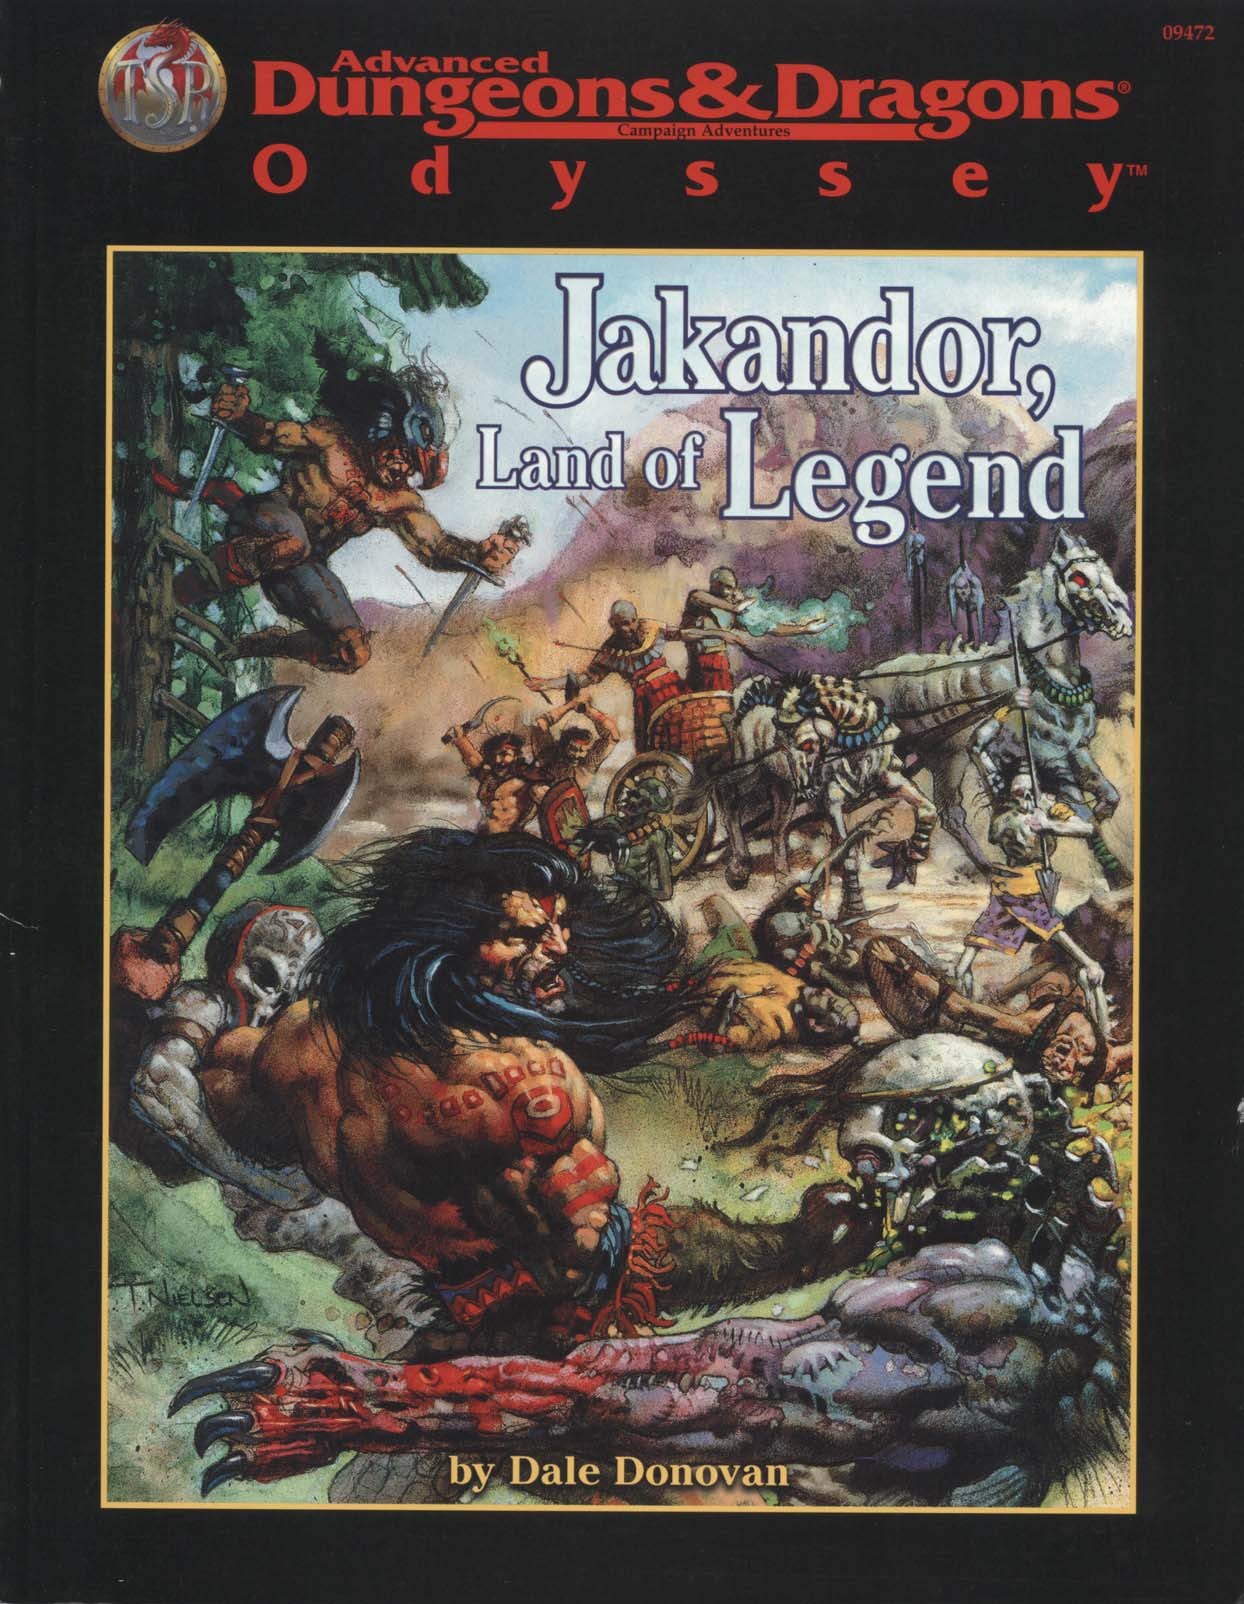 Jakandor, Land of Legend